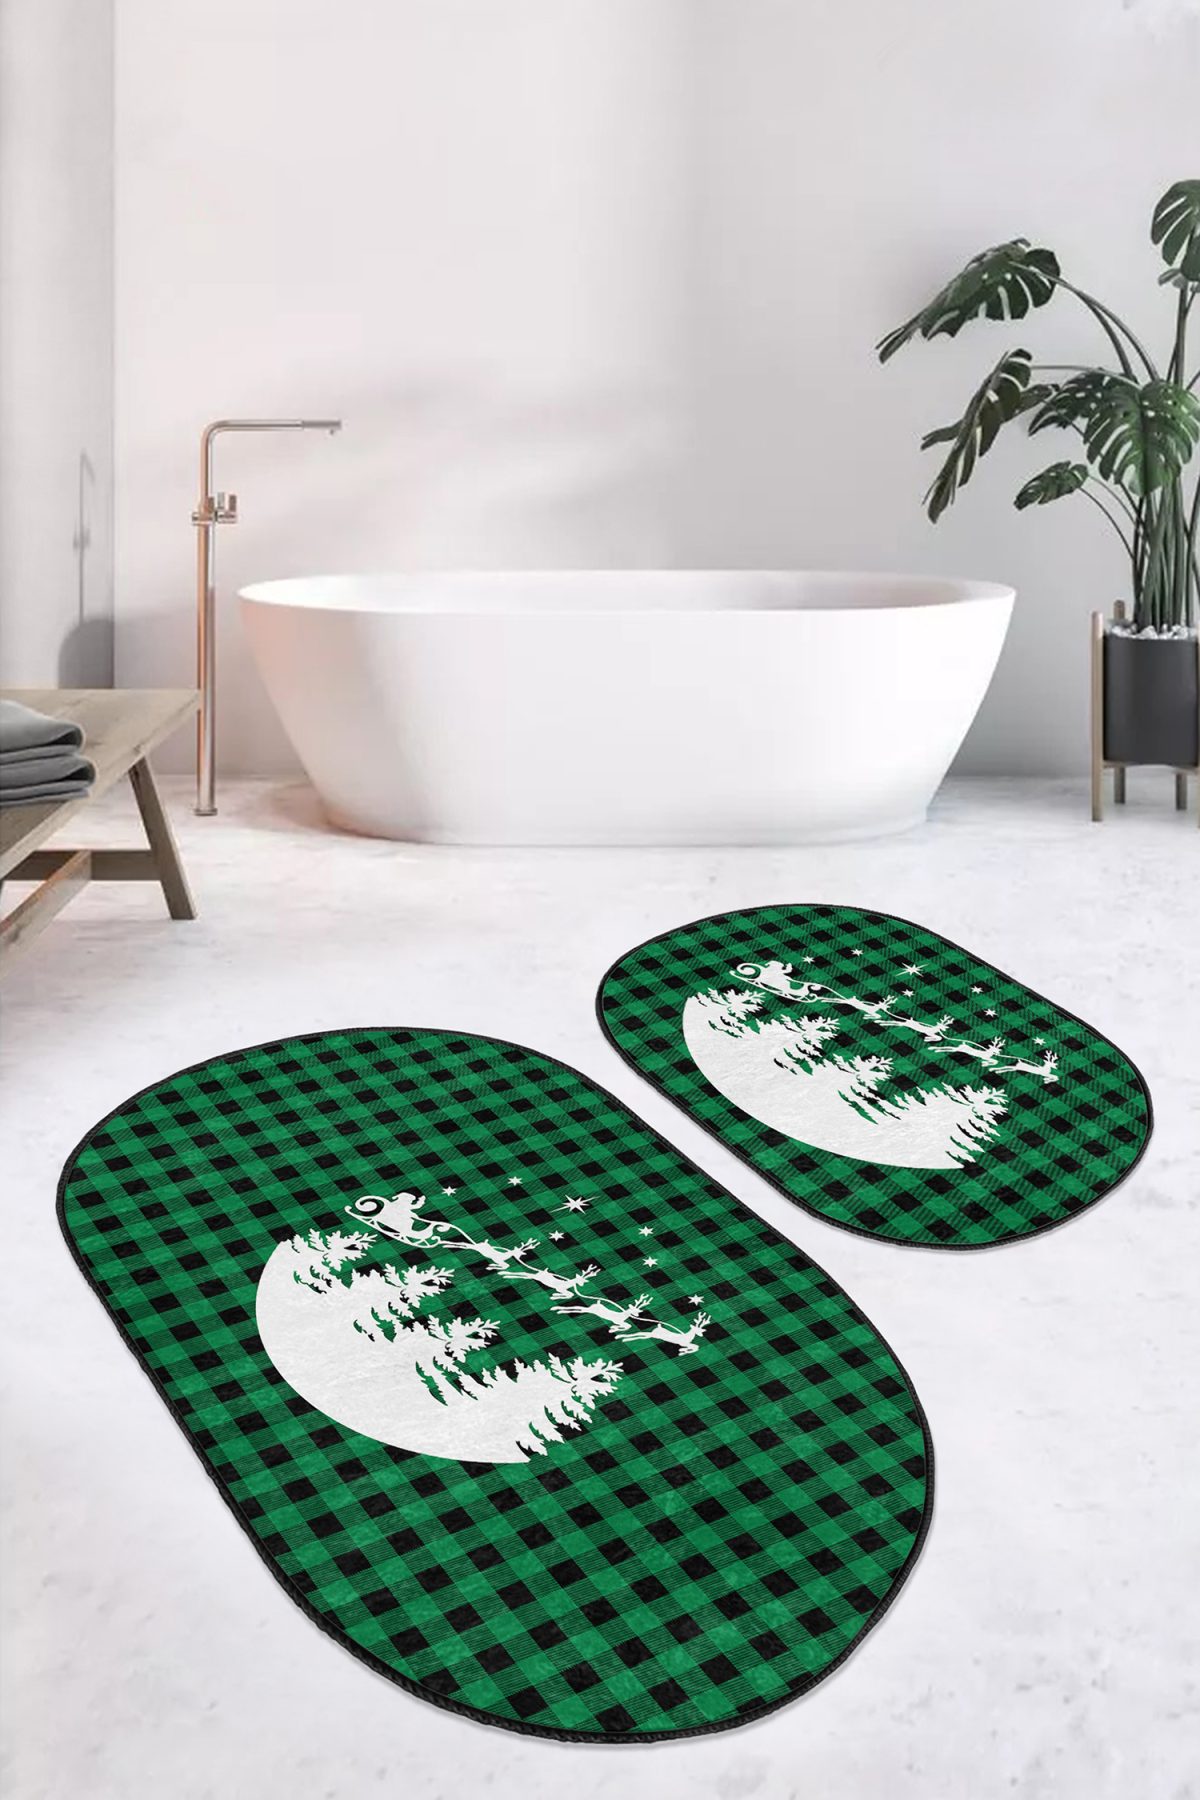 Yeşil Ekose Motifli Yılbaşı Tasarımlı 2'li Oval Kaymaz Tabanlı Mutfak Paspas Takımı & Banyo Halısı Realhomes